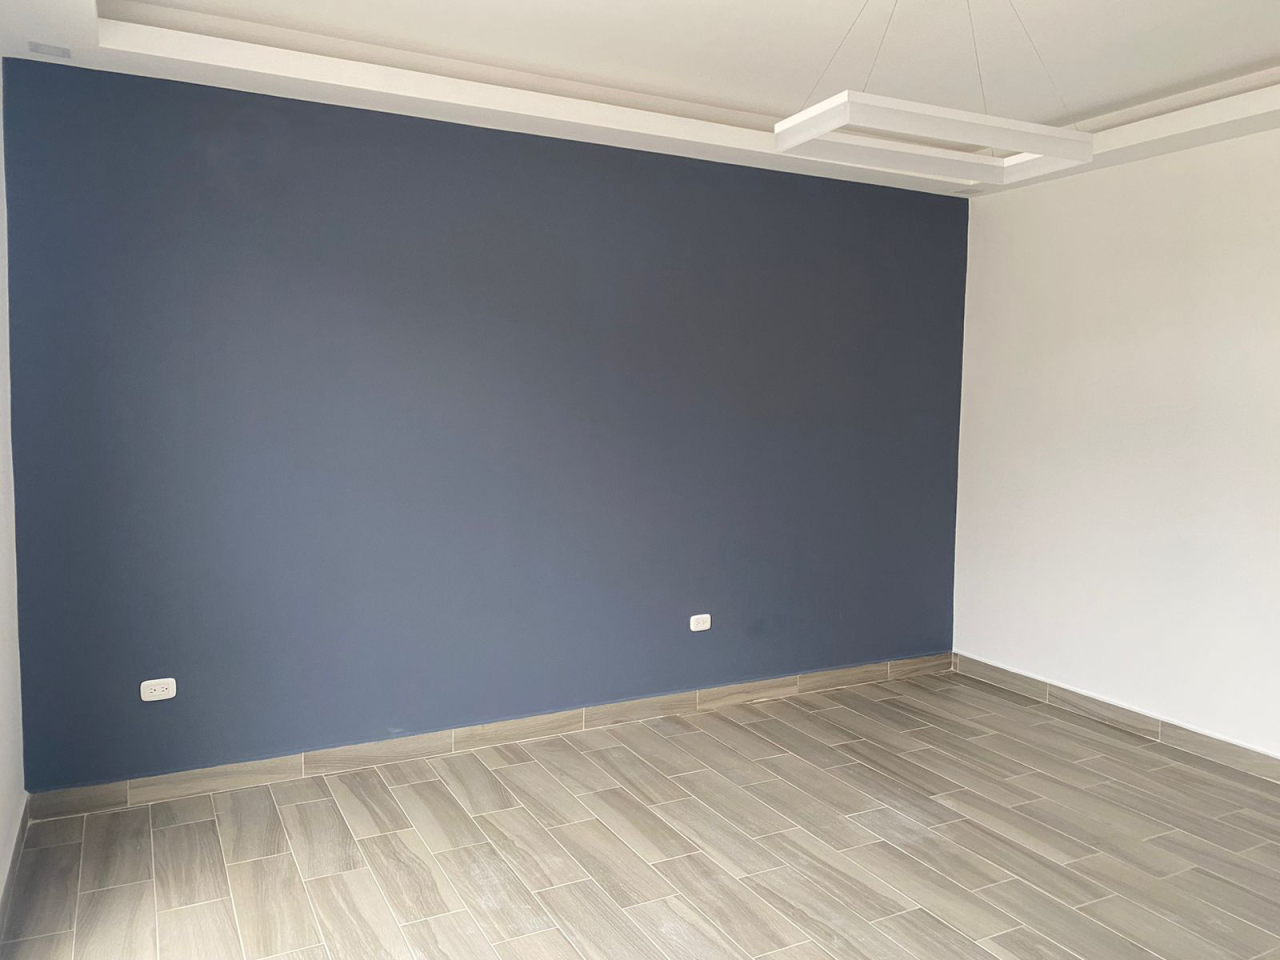 Habitación con acabados modernos color blanco, una pared color azul, y el piso de porcelanato tipo madera.